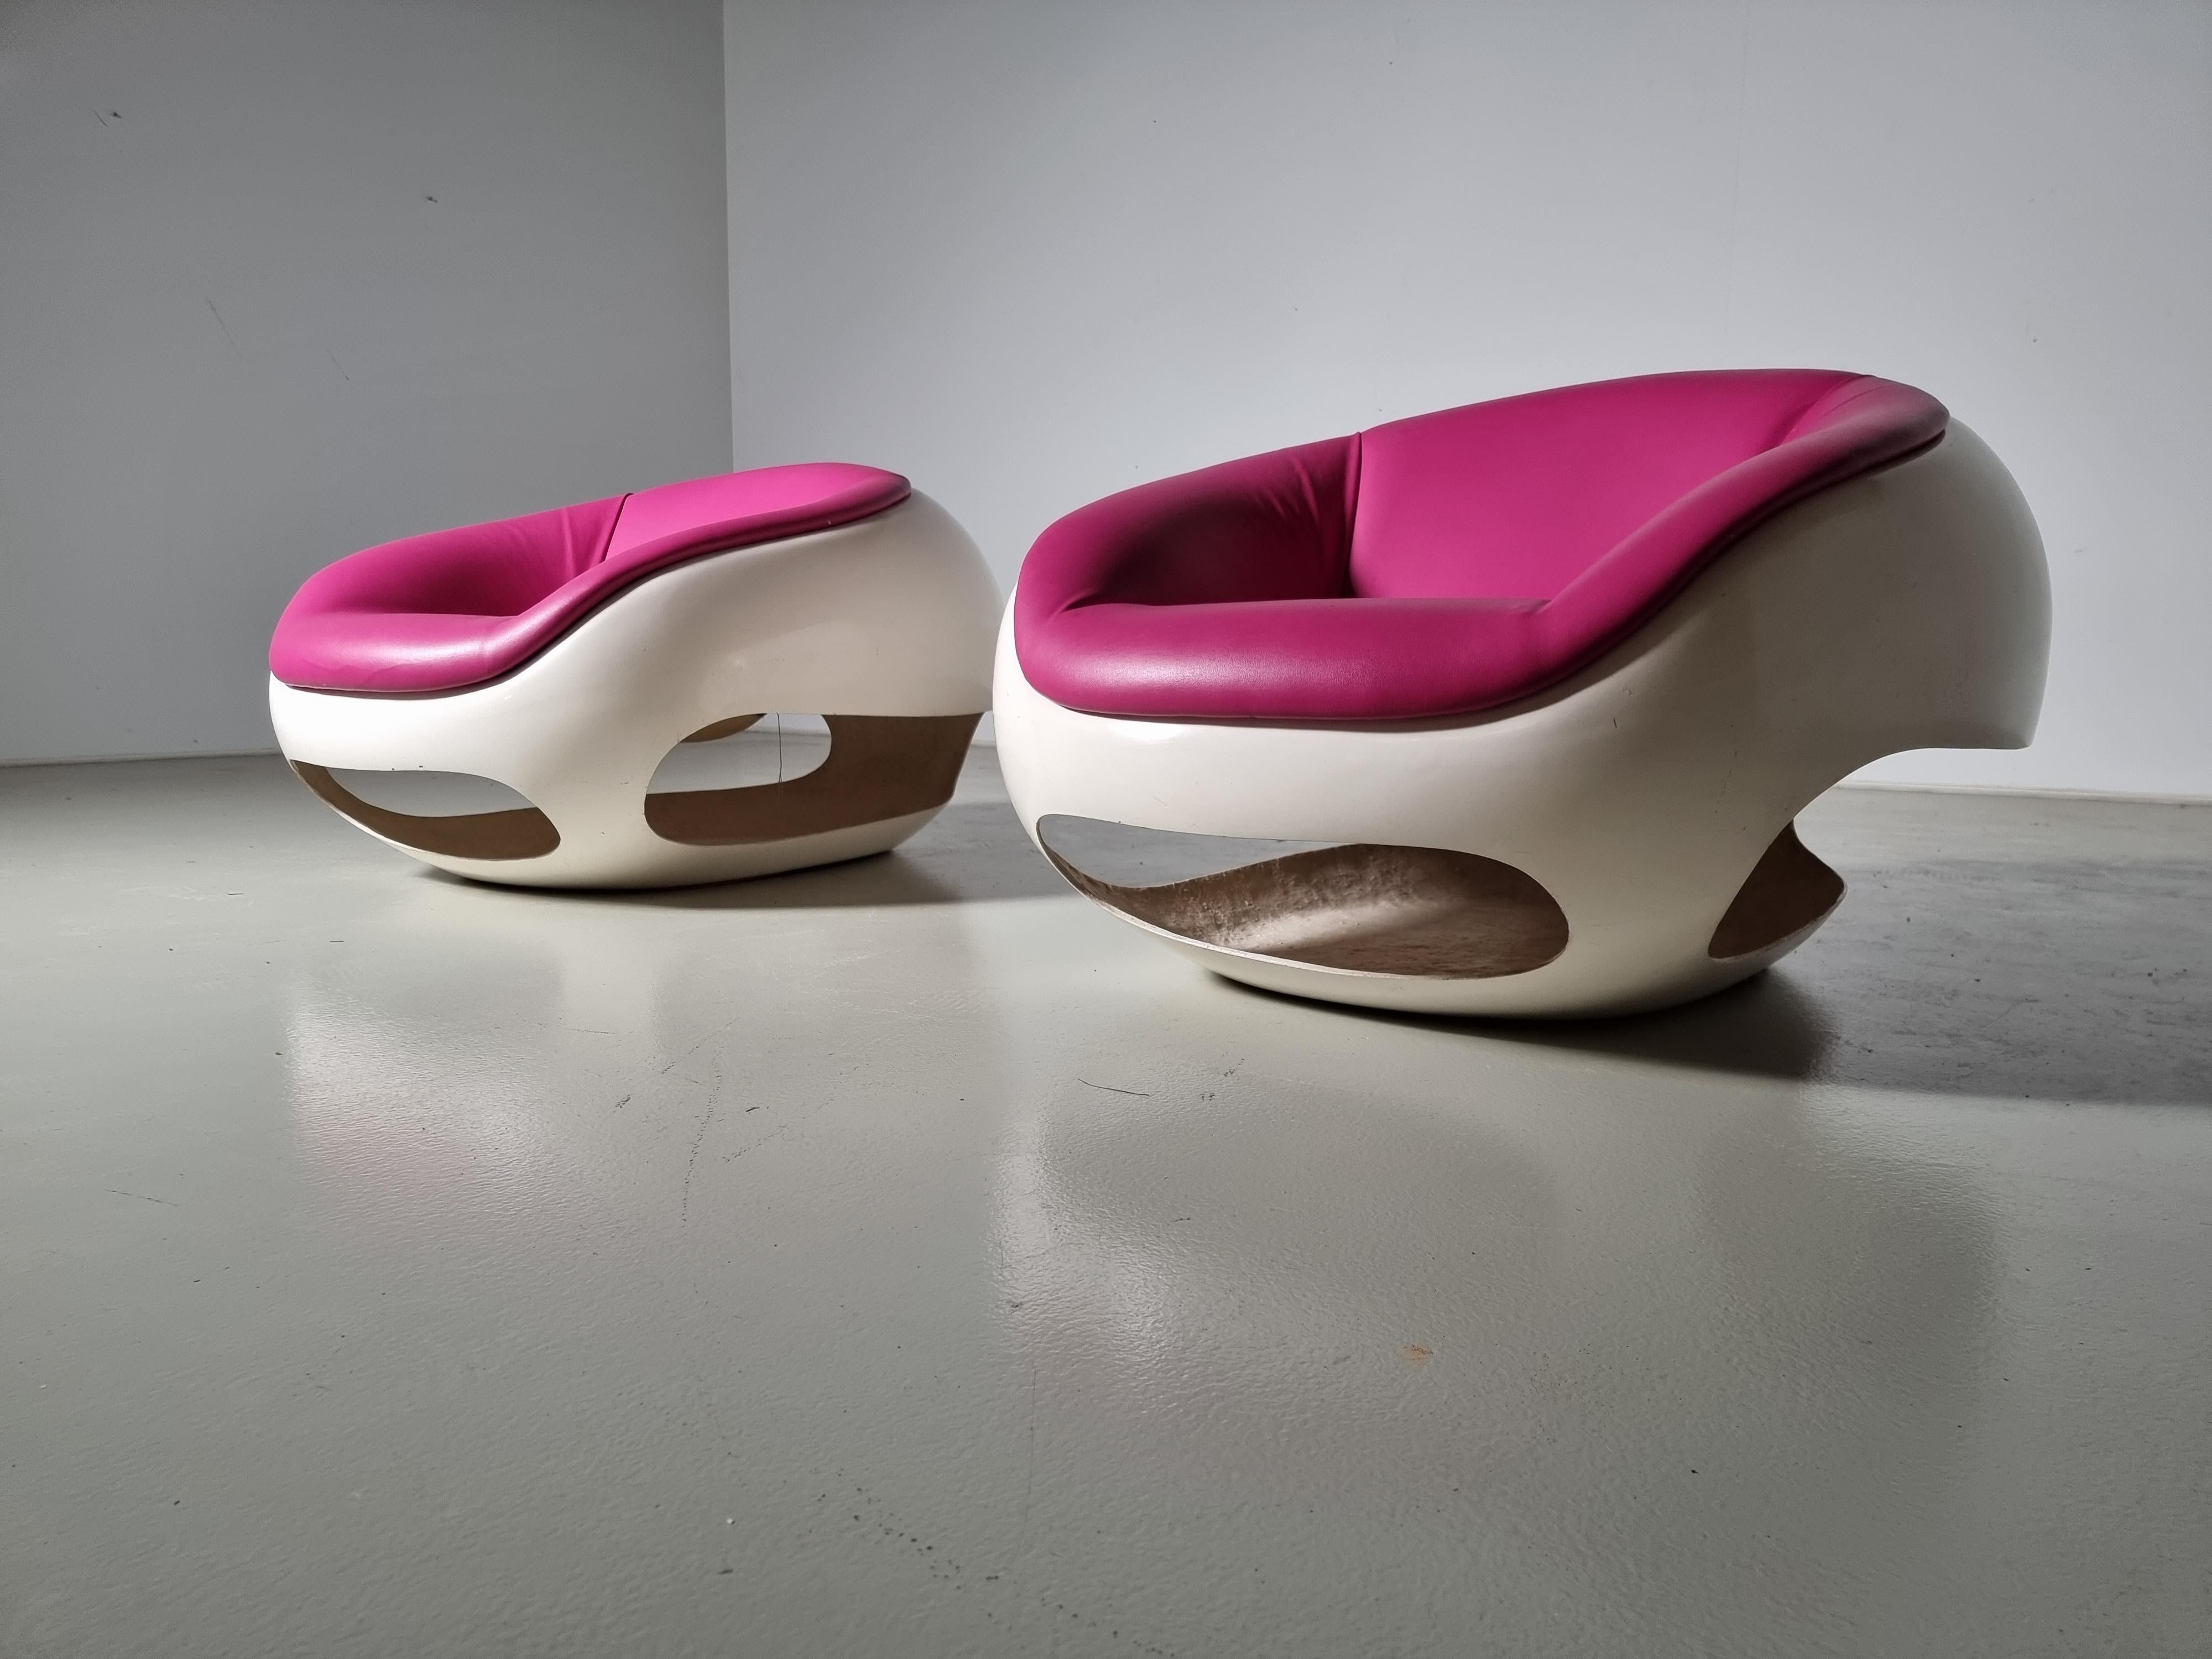 Paire de chaises longues postmodernes du designer italien Mario Sabot. Le design s'inspire de la série GT de Ferrari dans les années 1960. Les découpes reprennent la forme de la calandre et du passage de roue de l'emblématique voiture de sport. La